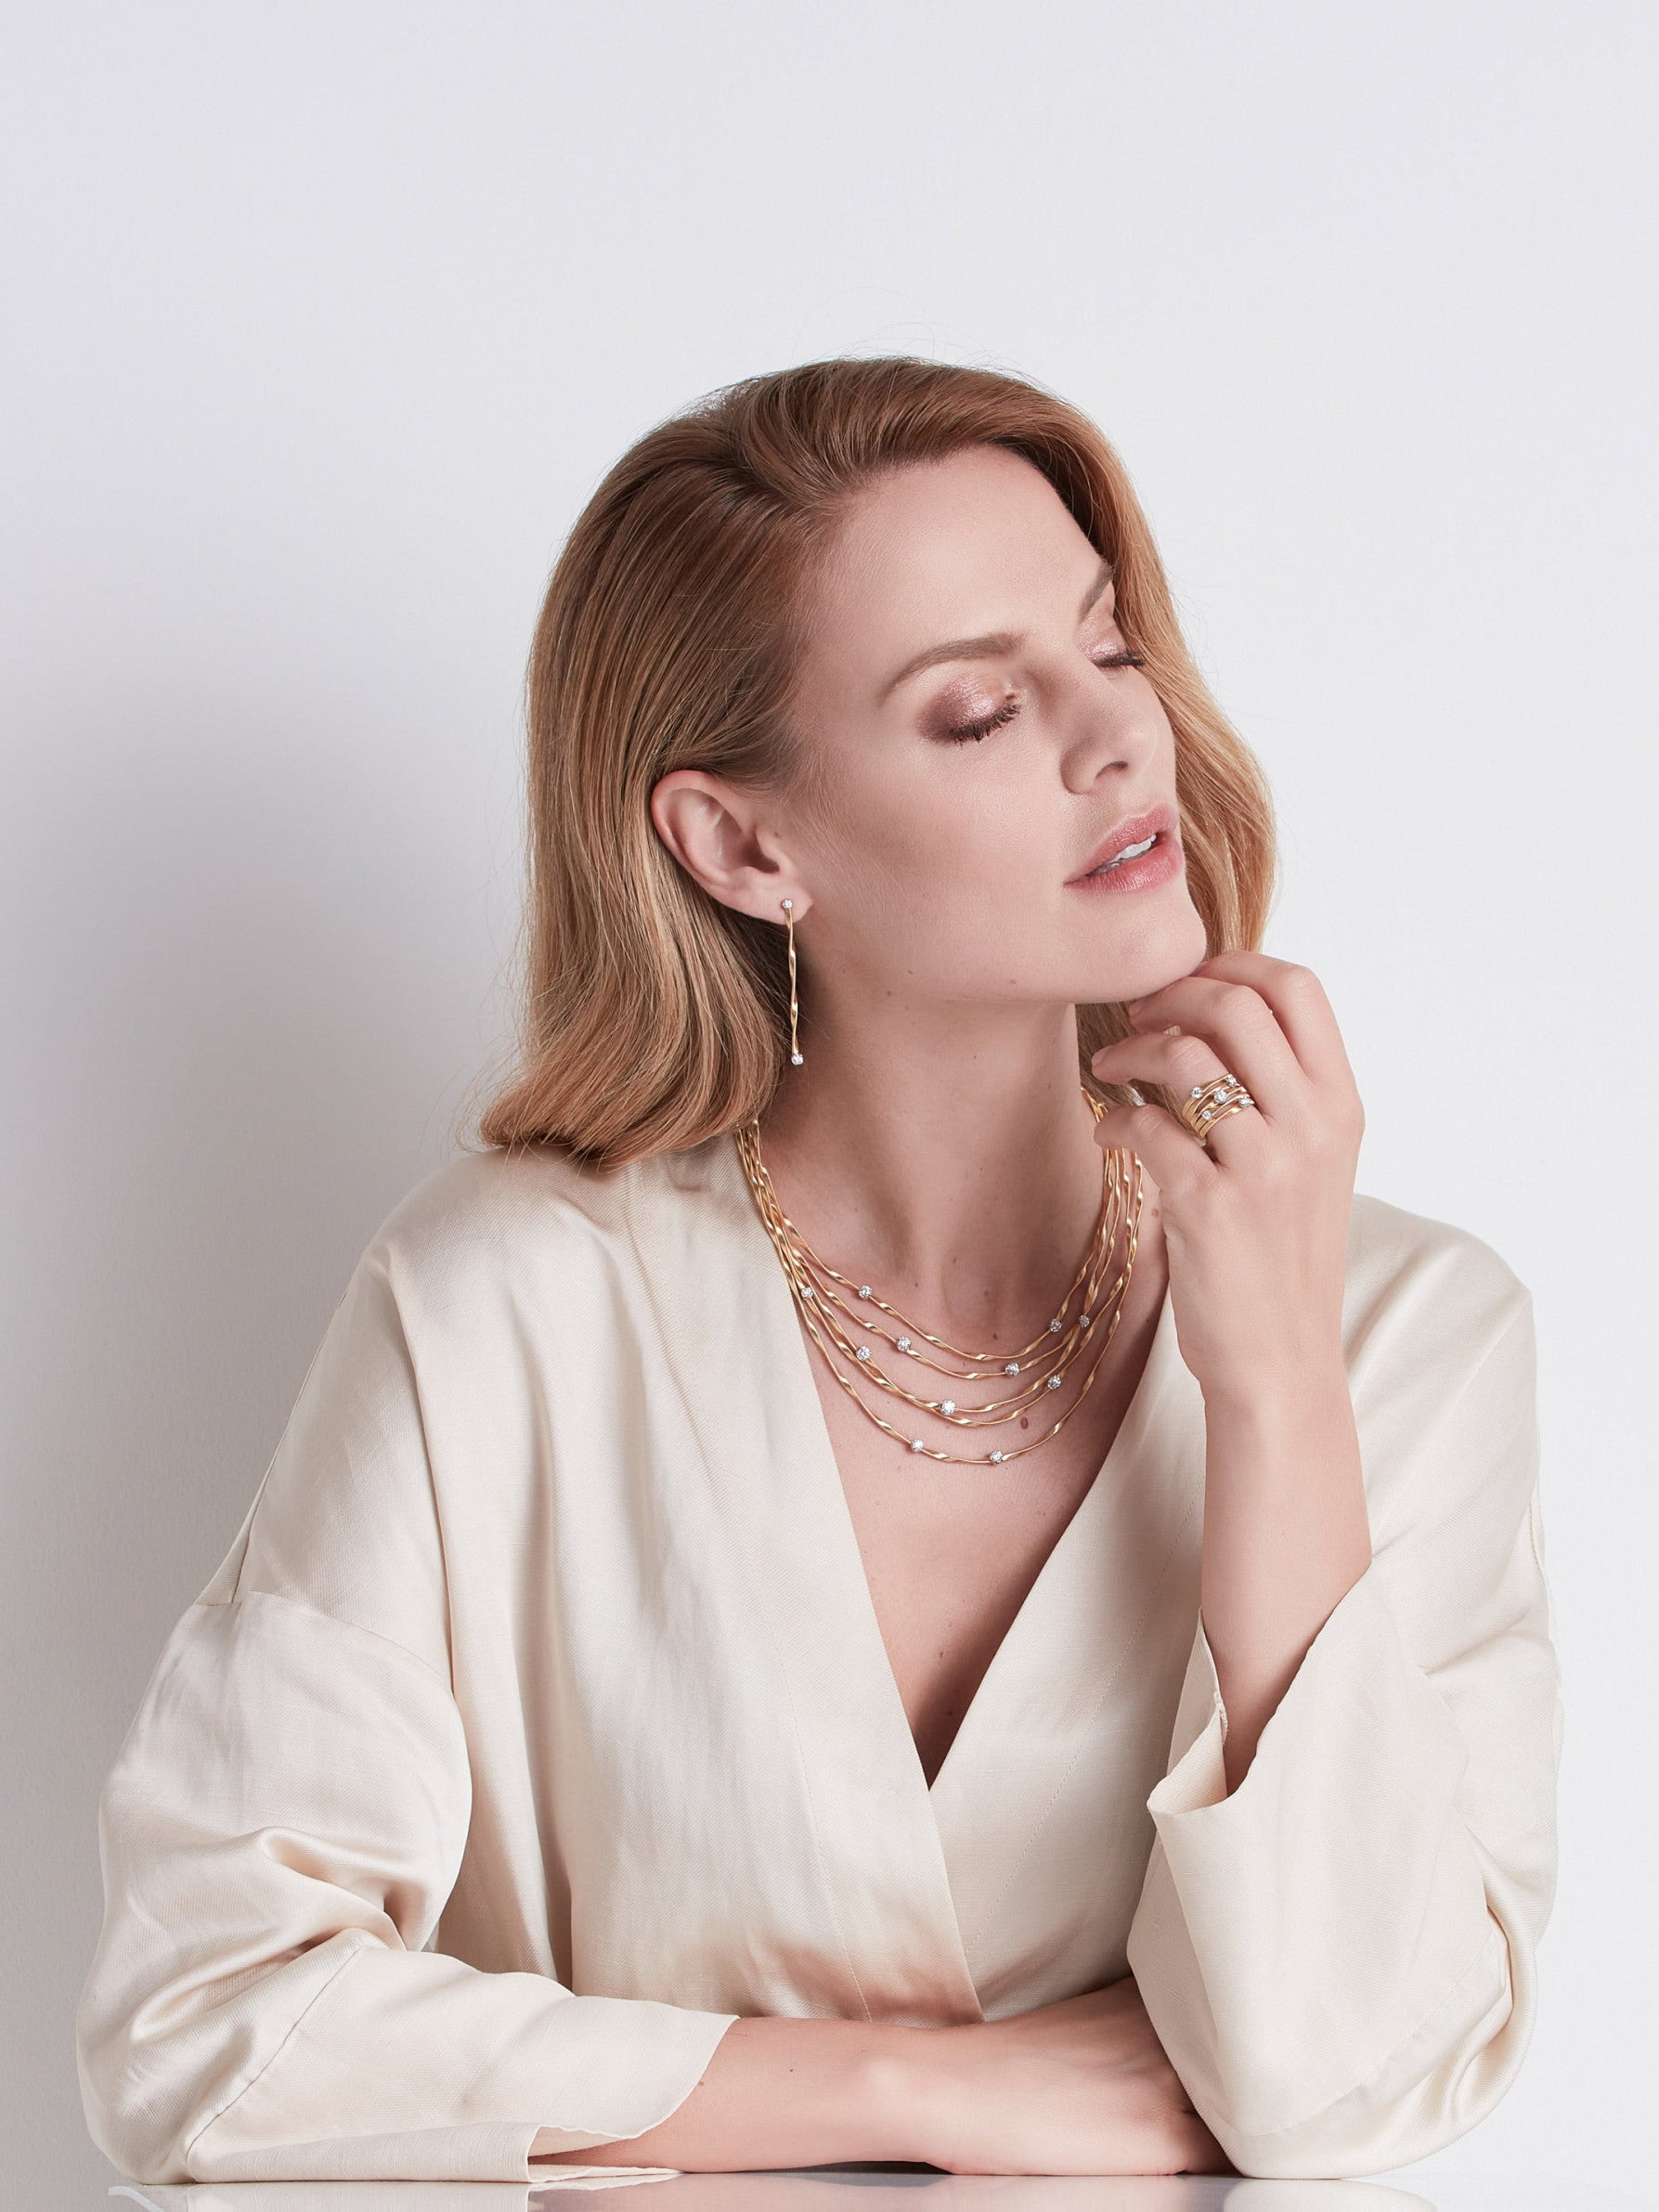 Marrakech Drop Earrings in 18k Yellow Gold with Diamonds - Orsini Jewellers NZ